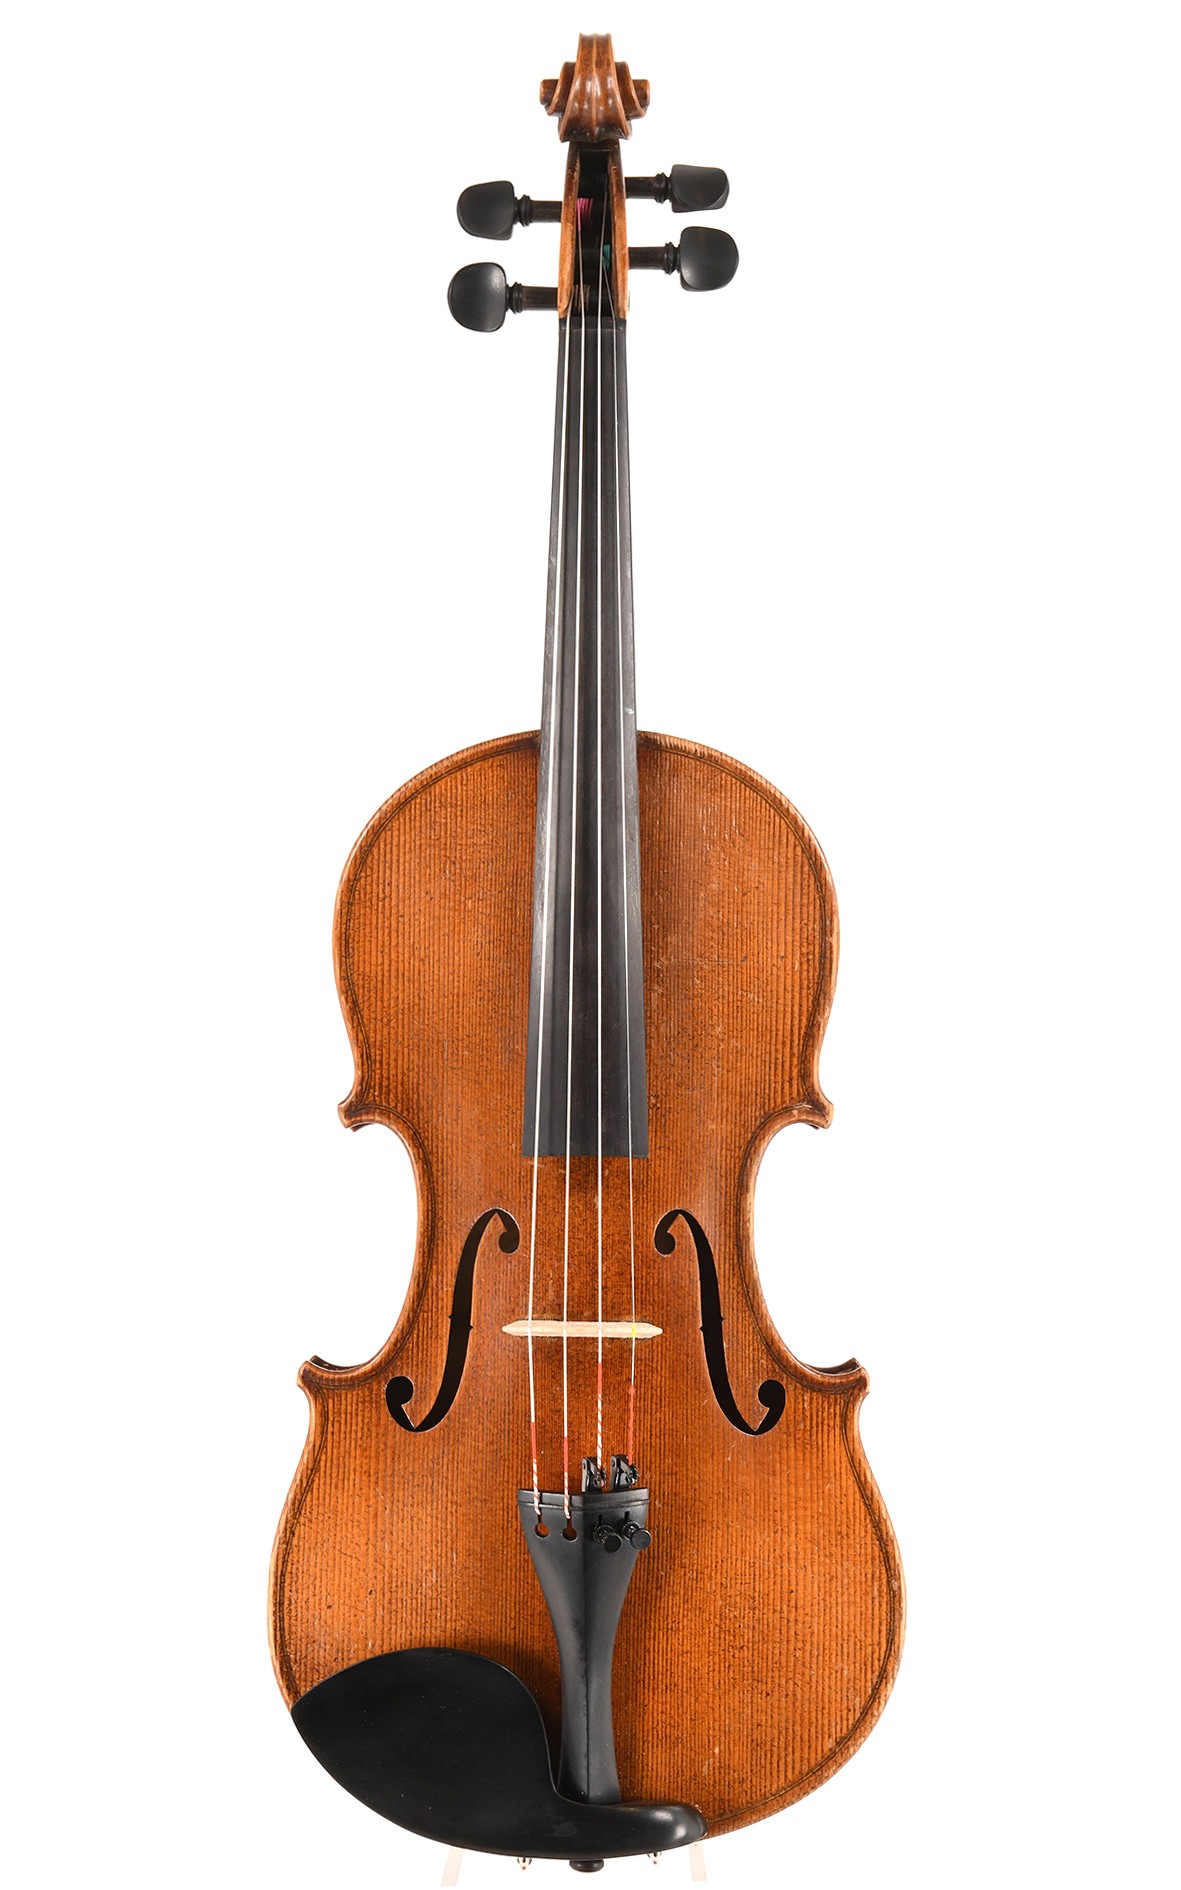 Old Markneukirchen violin after Guarneri, 1920's